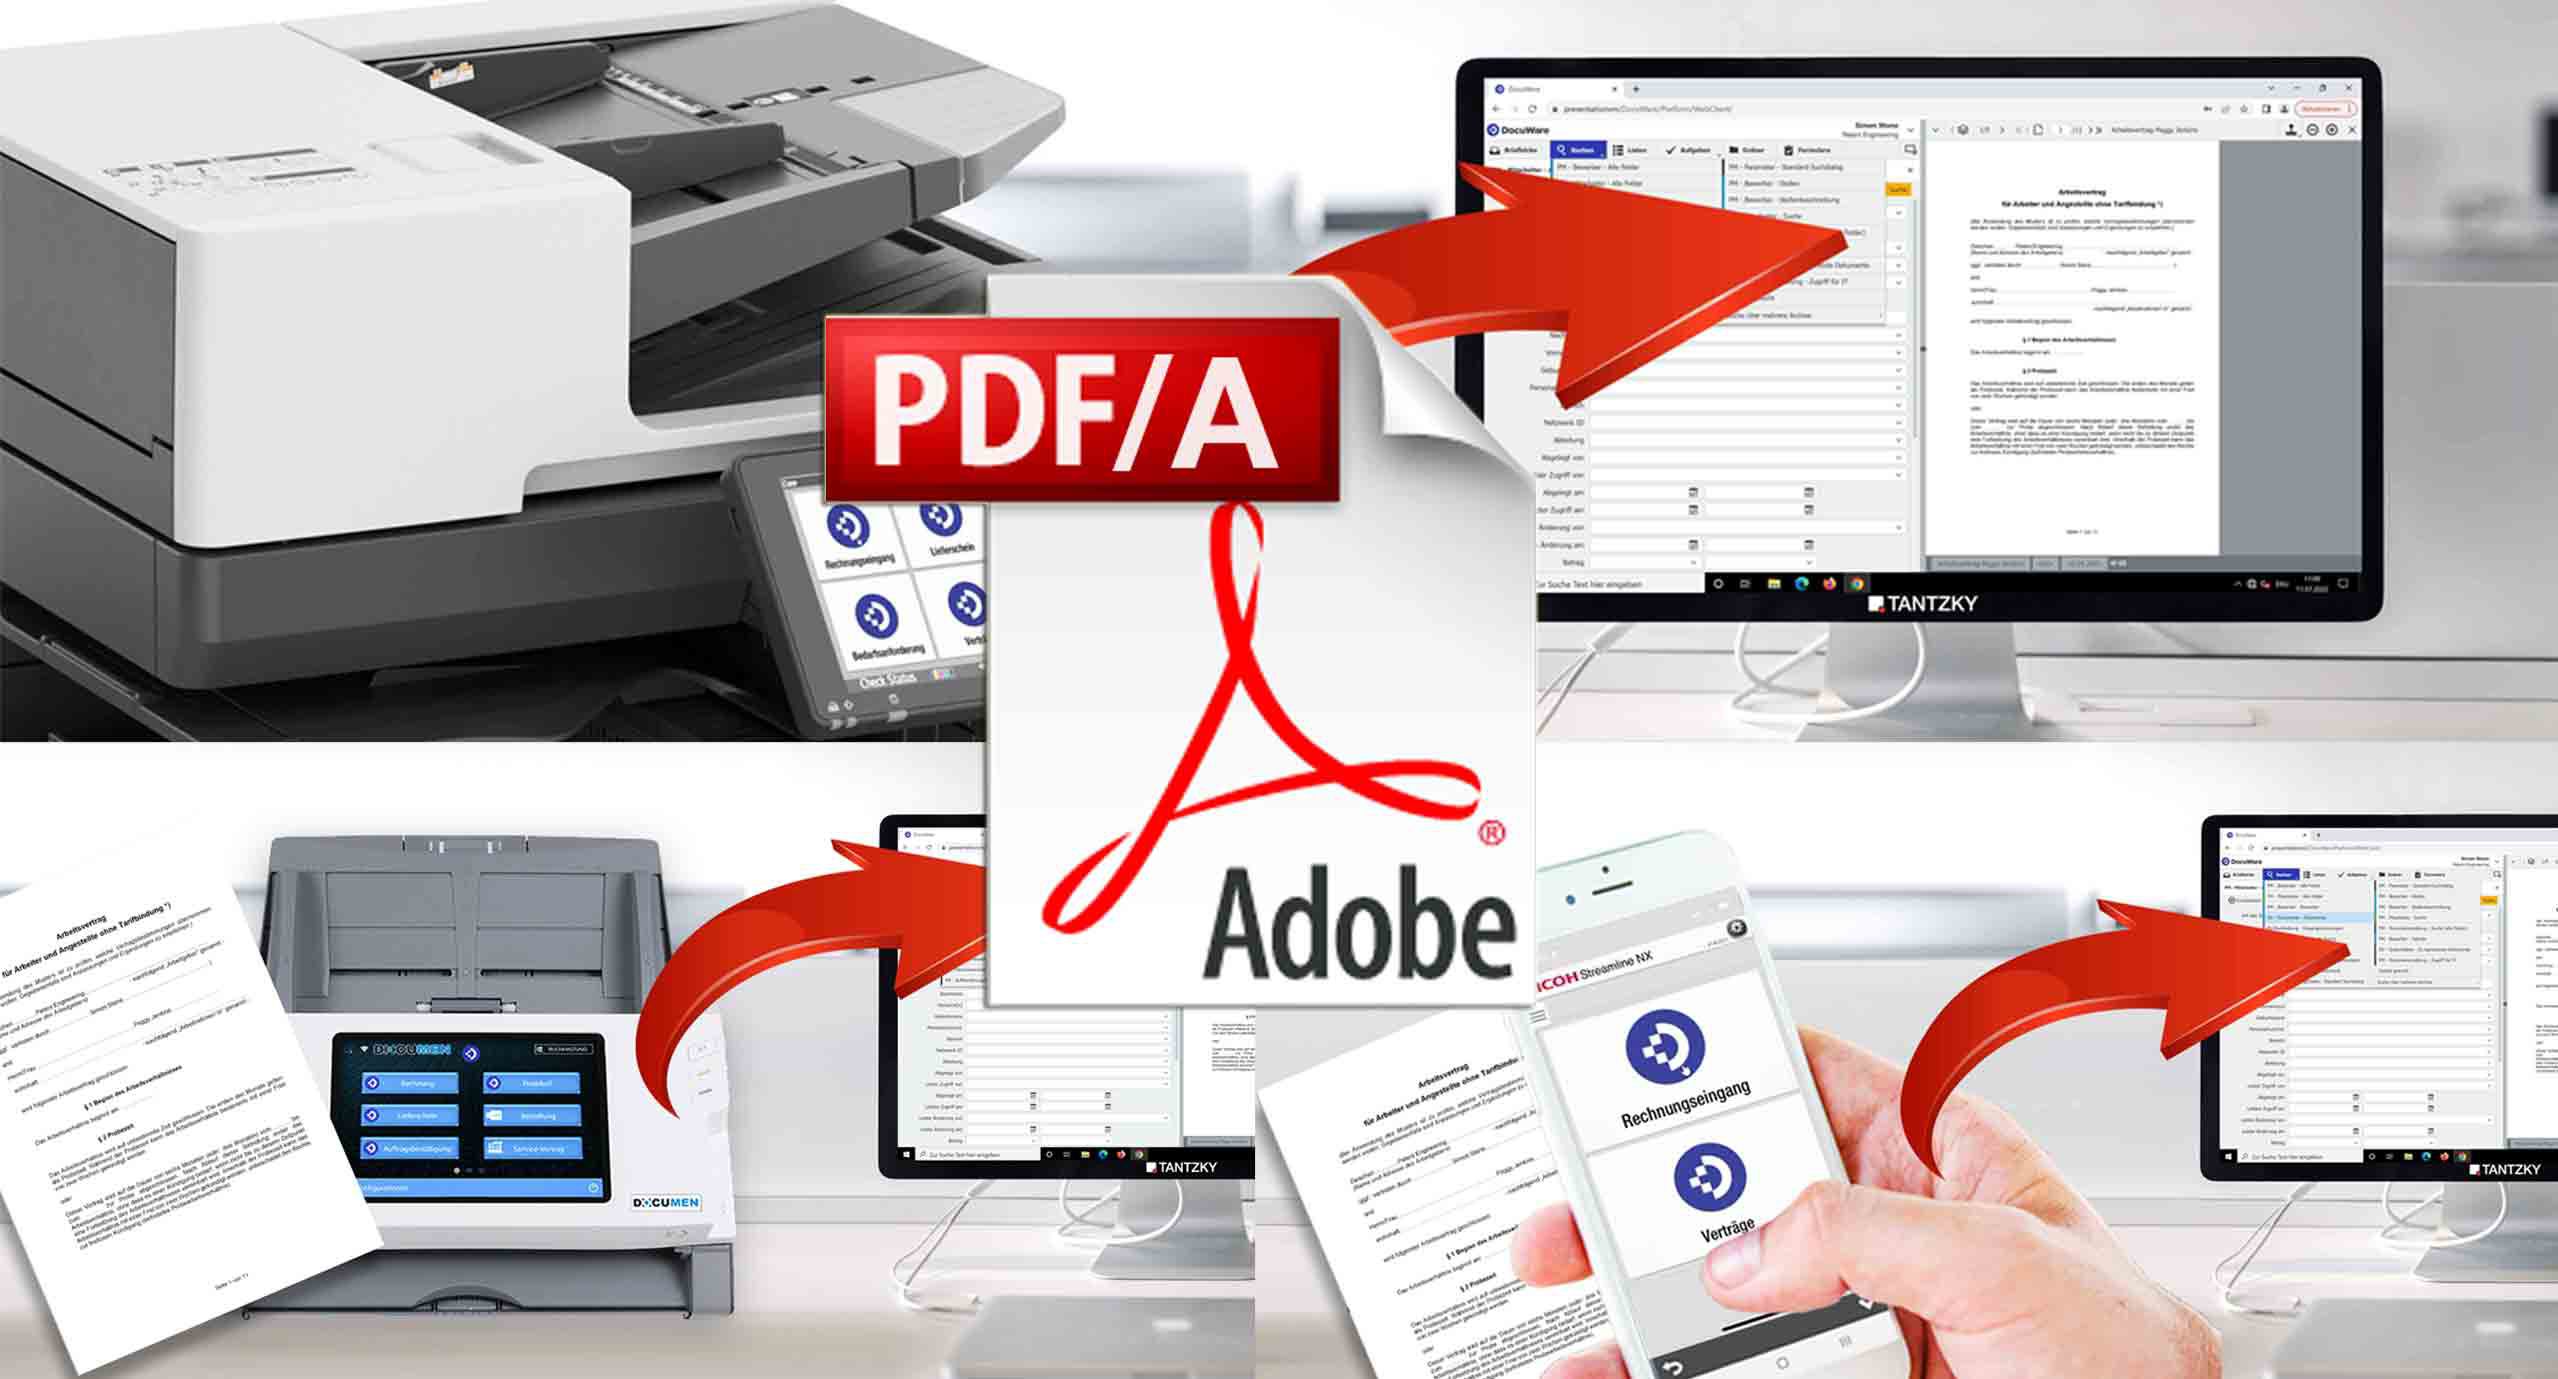 Dokumenten scannen und konvertieren in PDF/A